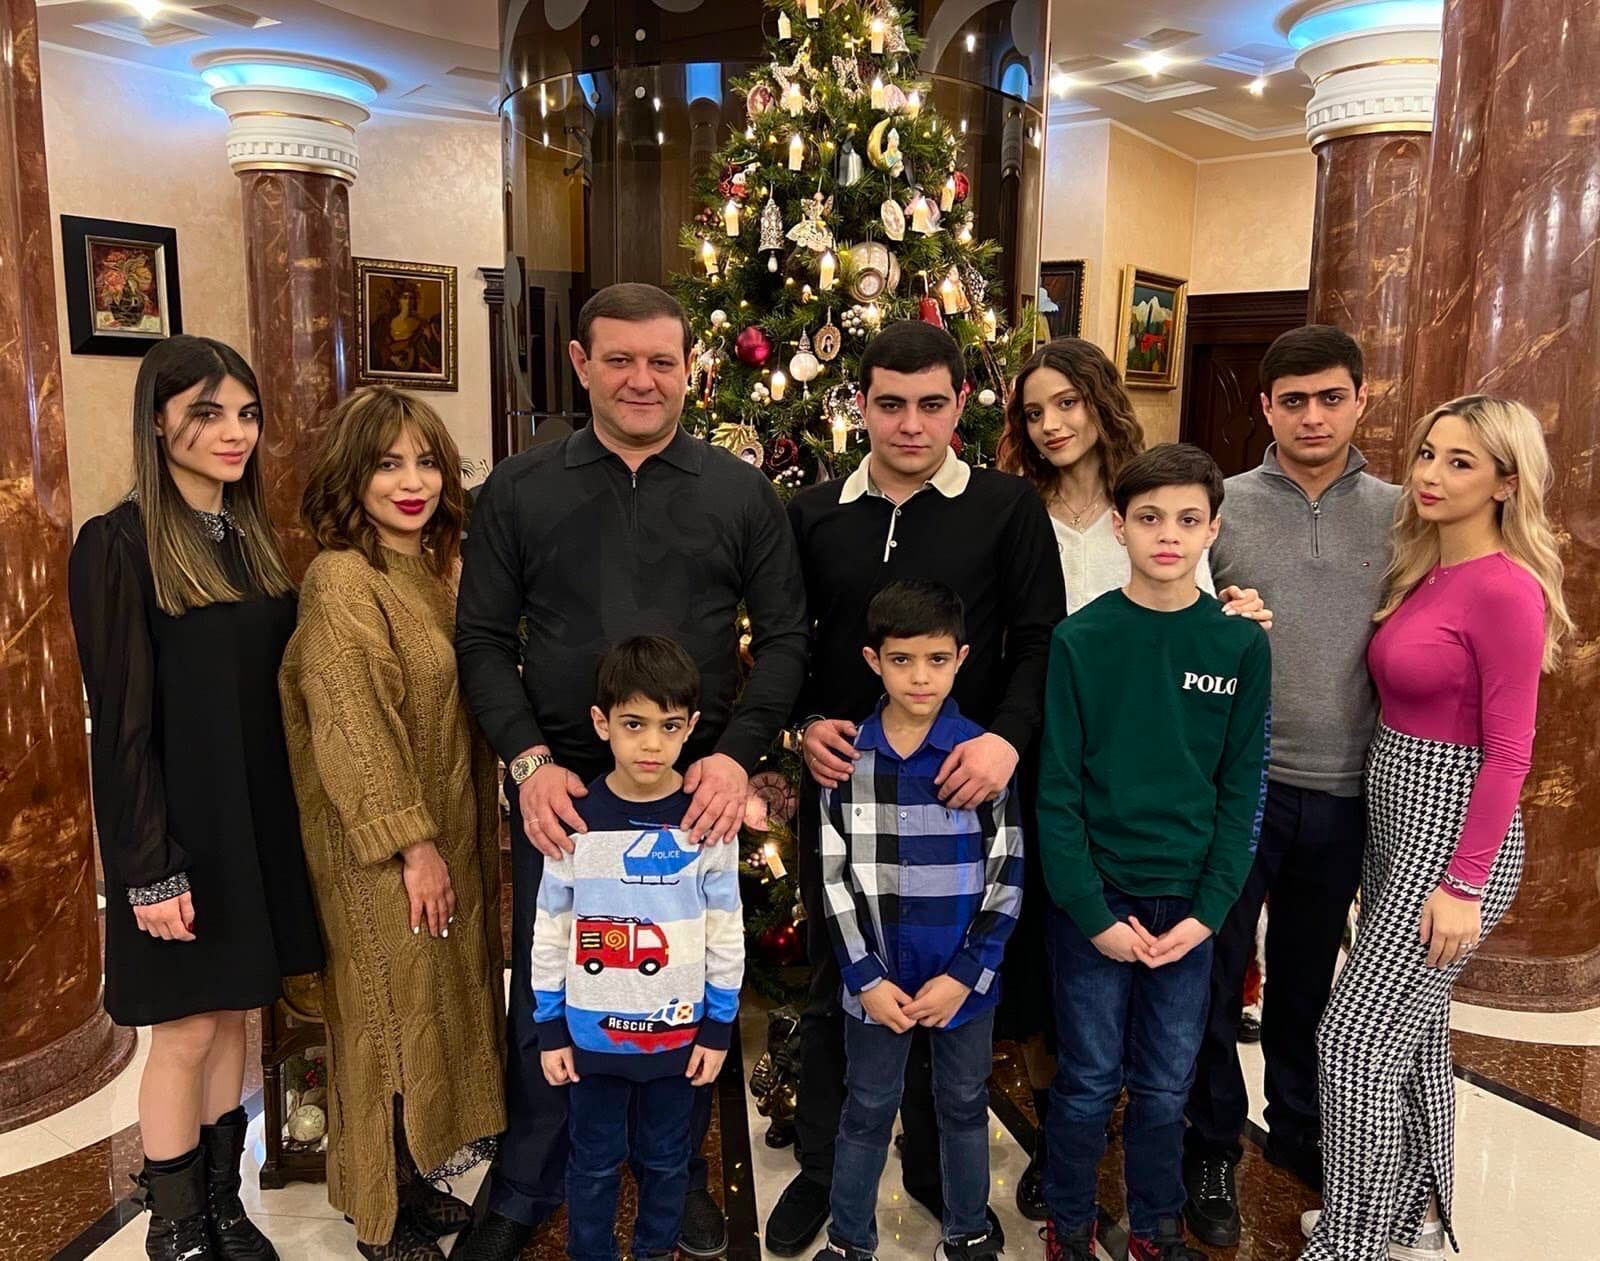 Ջերմություն և հավատ բոլոր հայ ընտանիքներին. Տարոն Մարգարյանը ընտանեկան լուսանկար է հրապարակել  